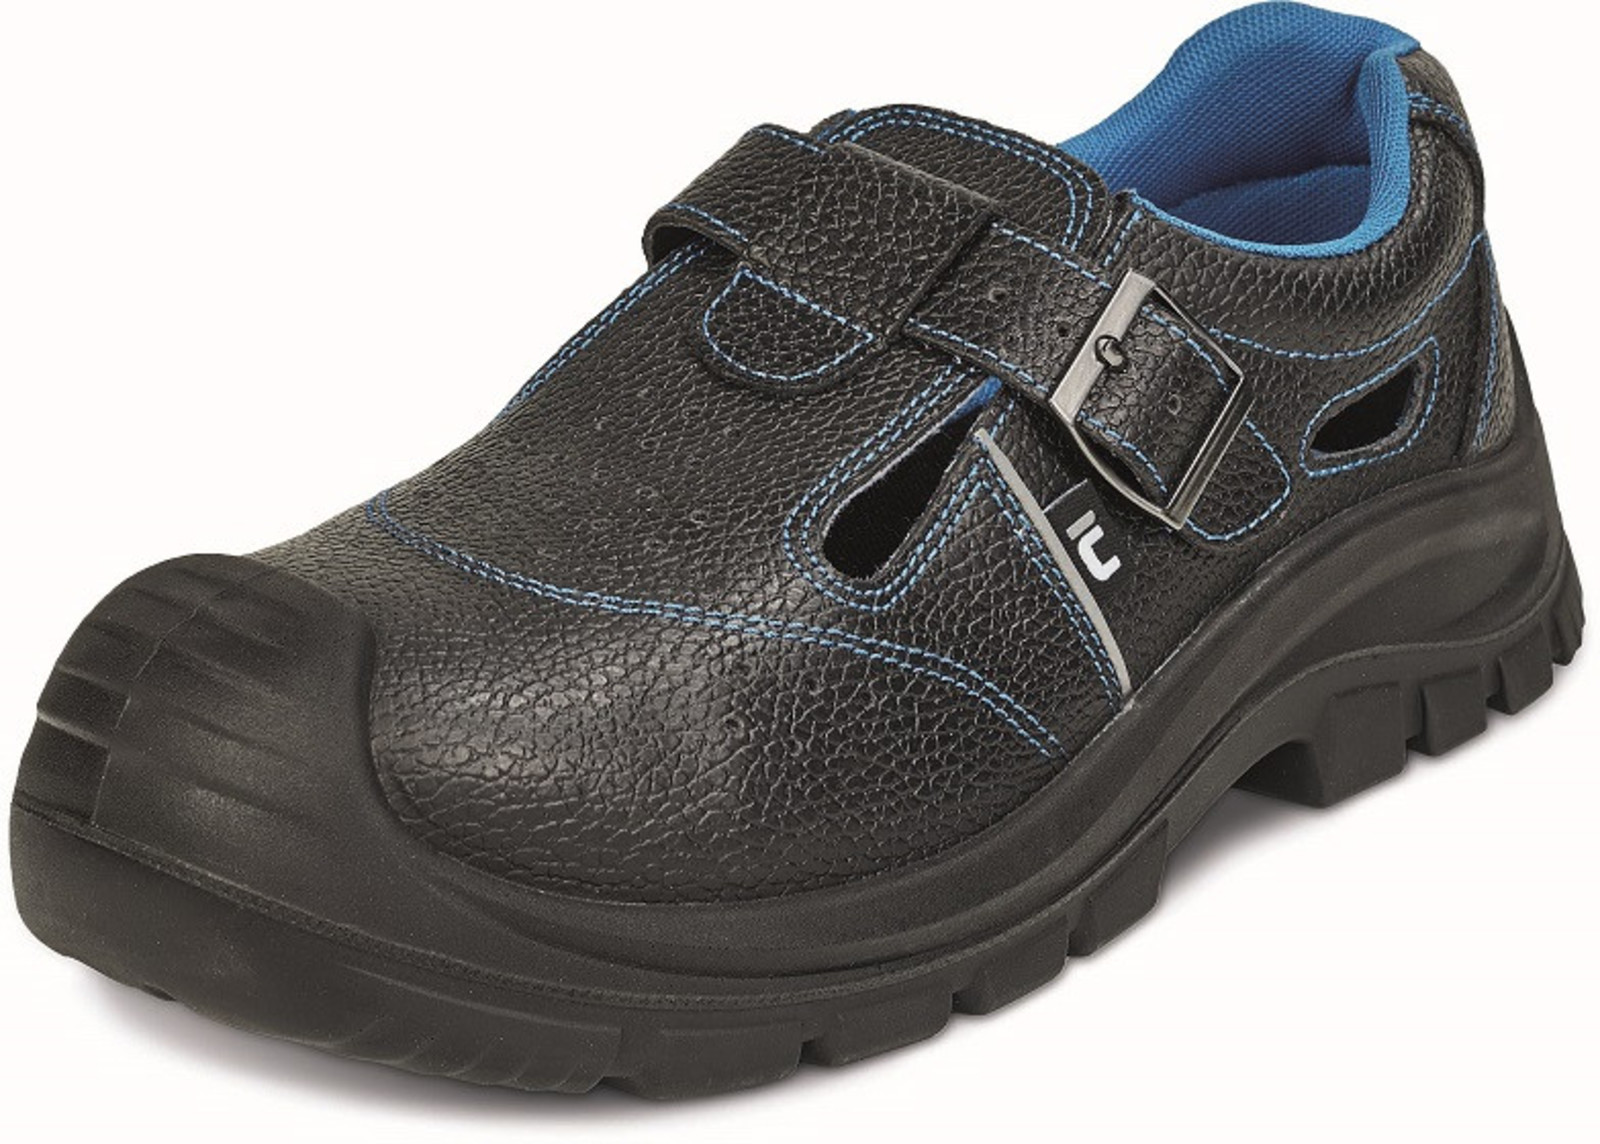 Bezpečnostné sandále Raven XT S1P - veľkosť: 38, farba: čierna